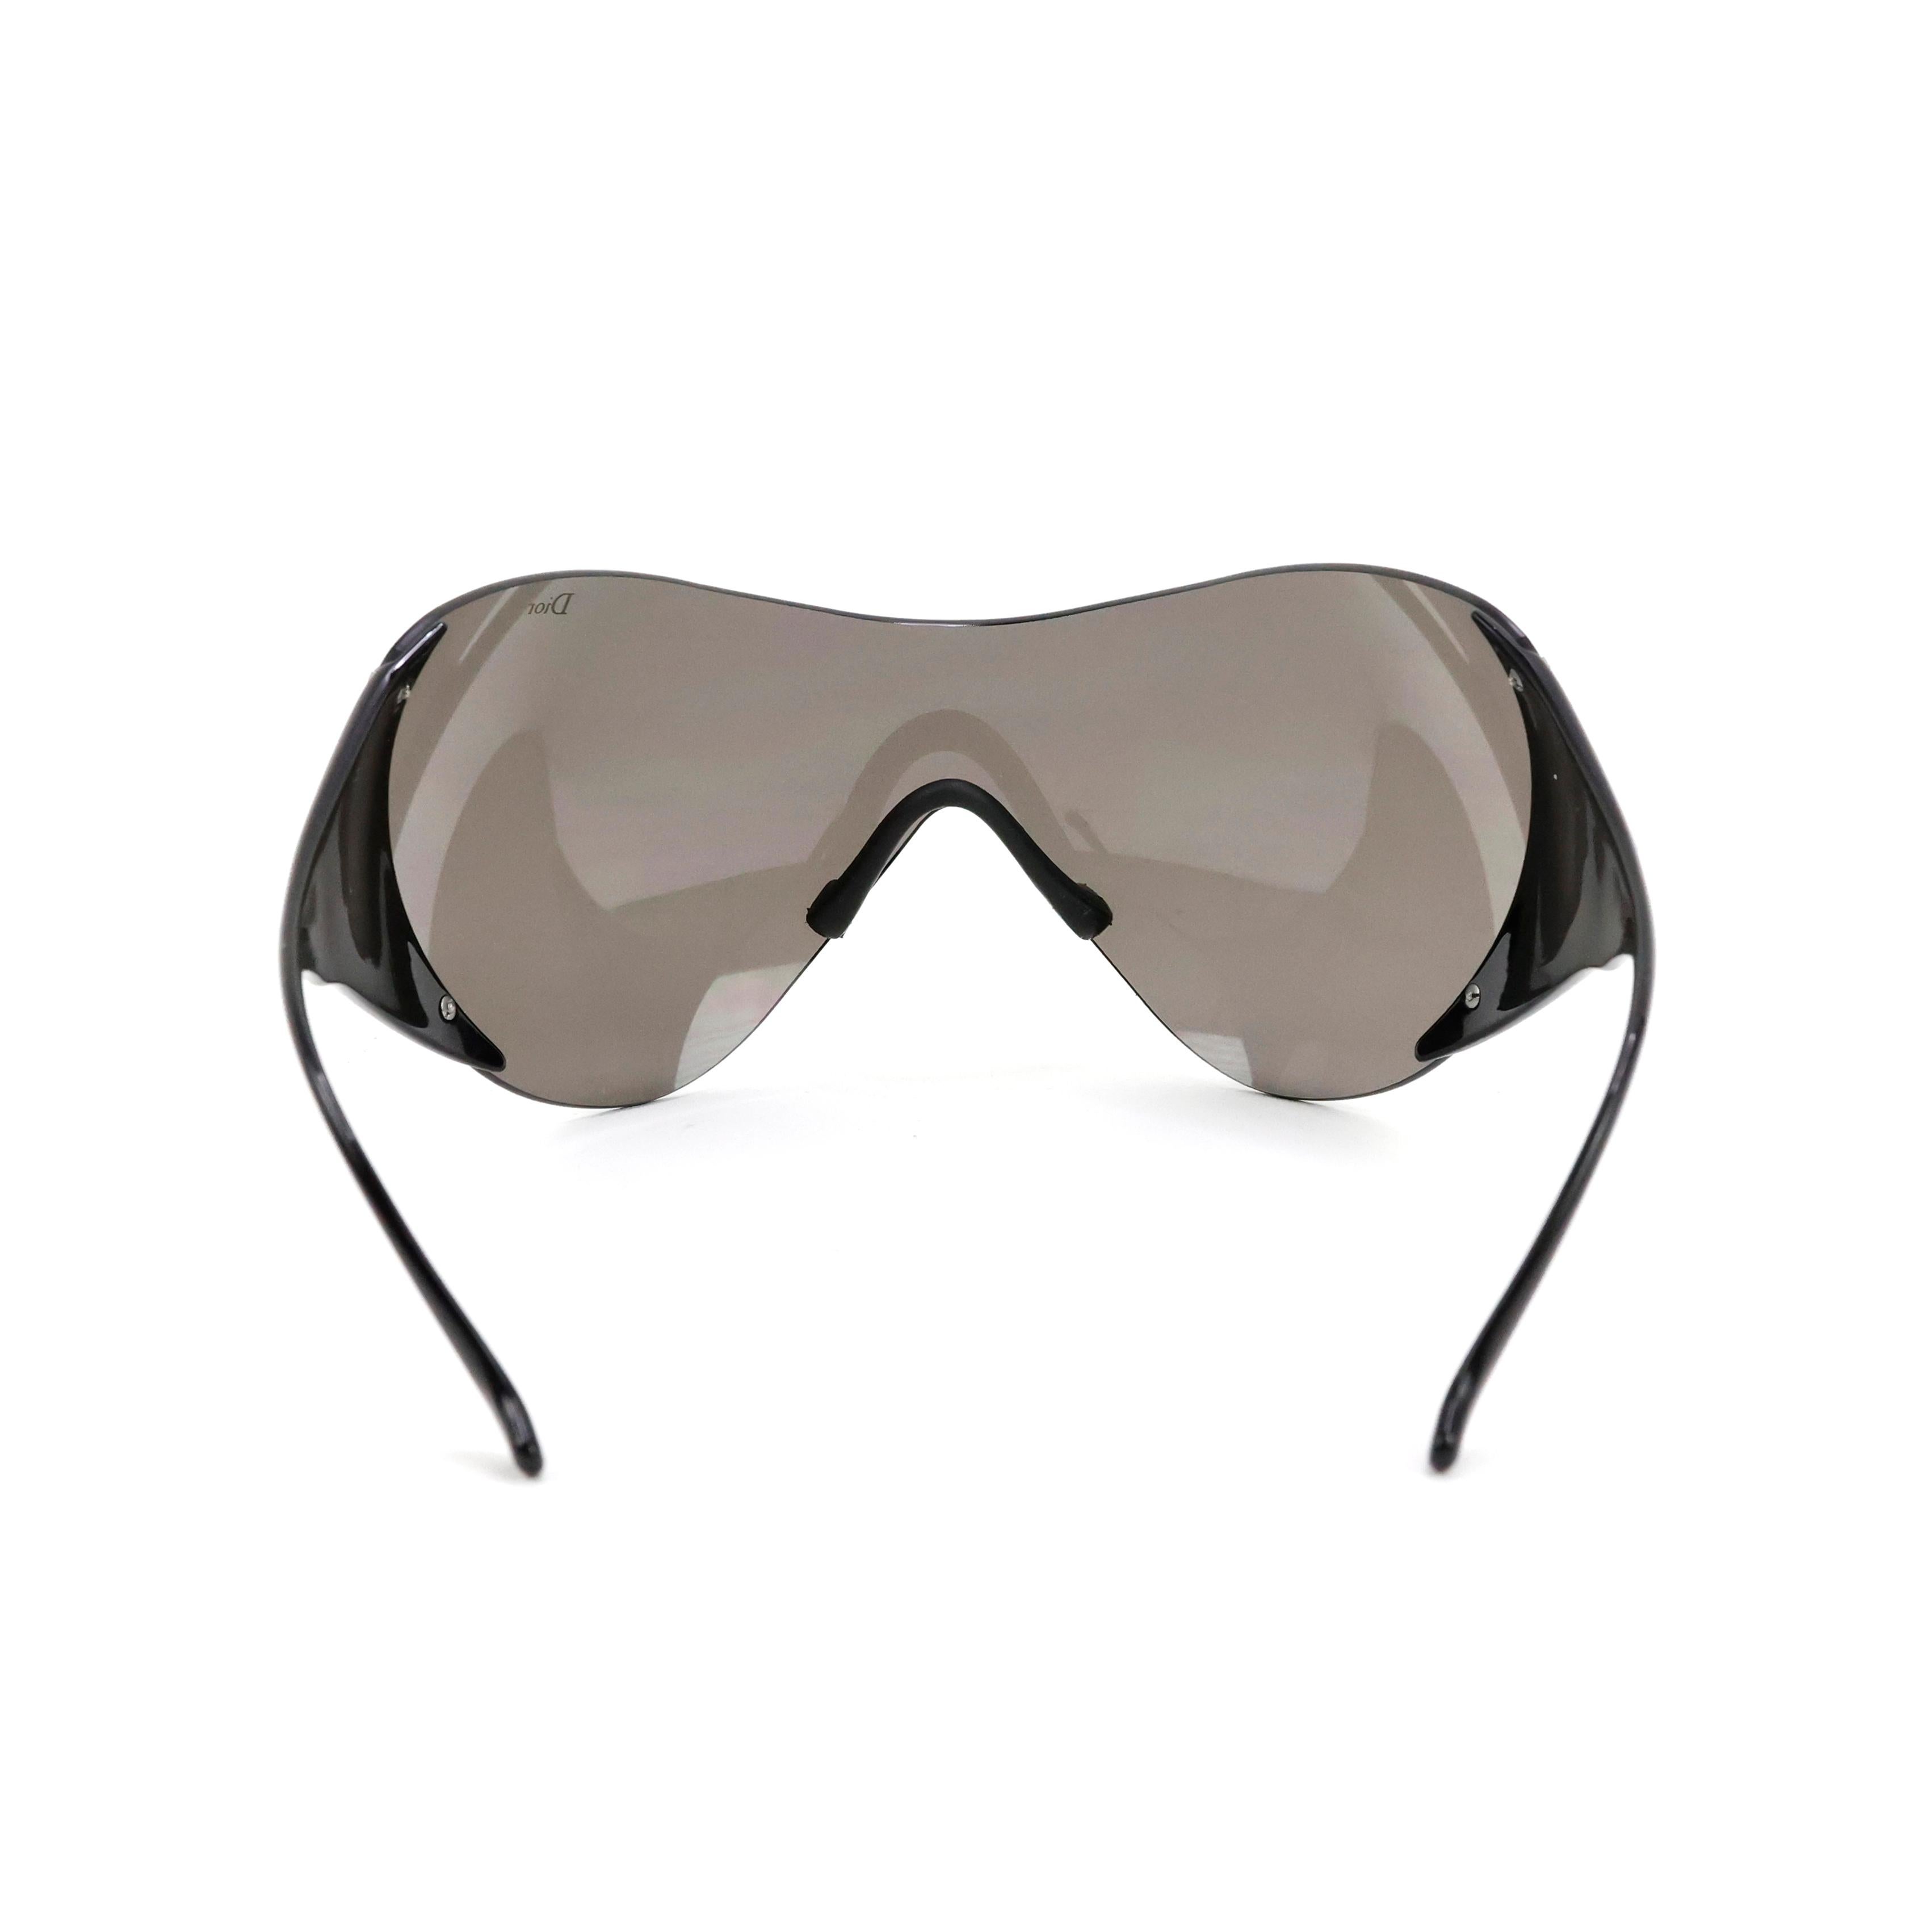 Christian Dior Ski 1 Sunglasses In Excellent Condition For Sale In Bressanone, IT